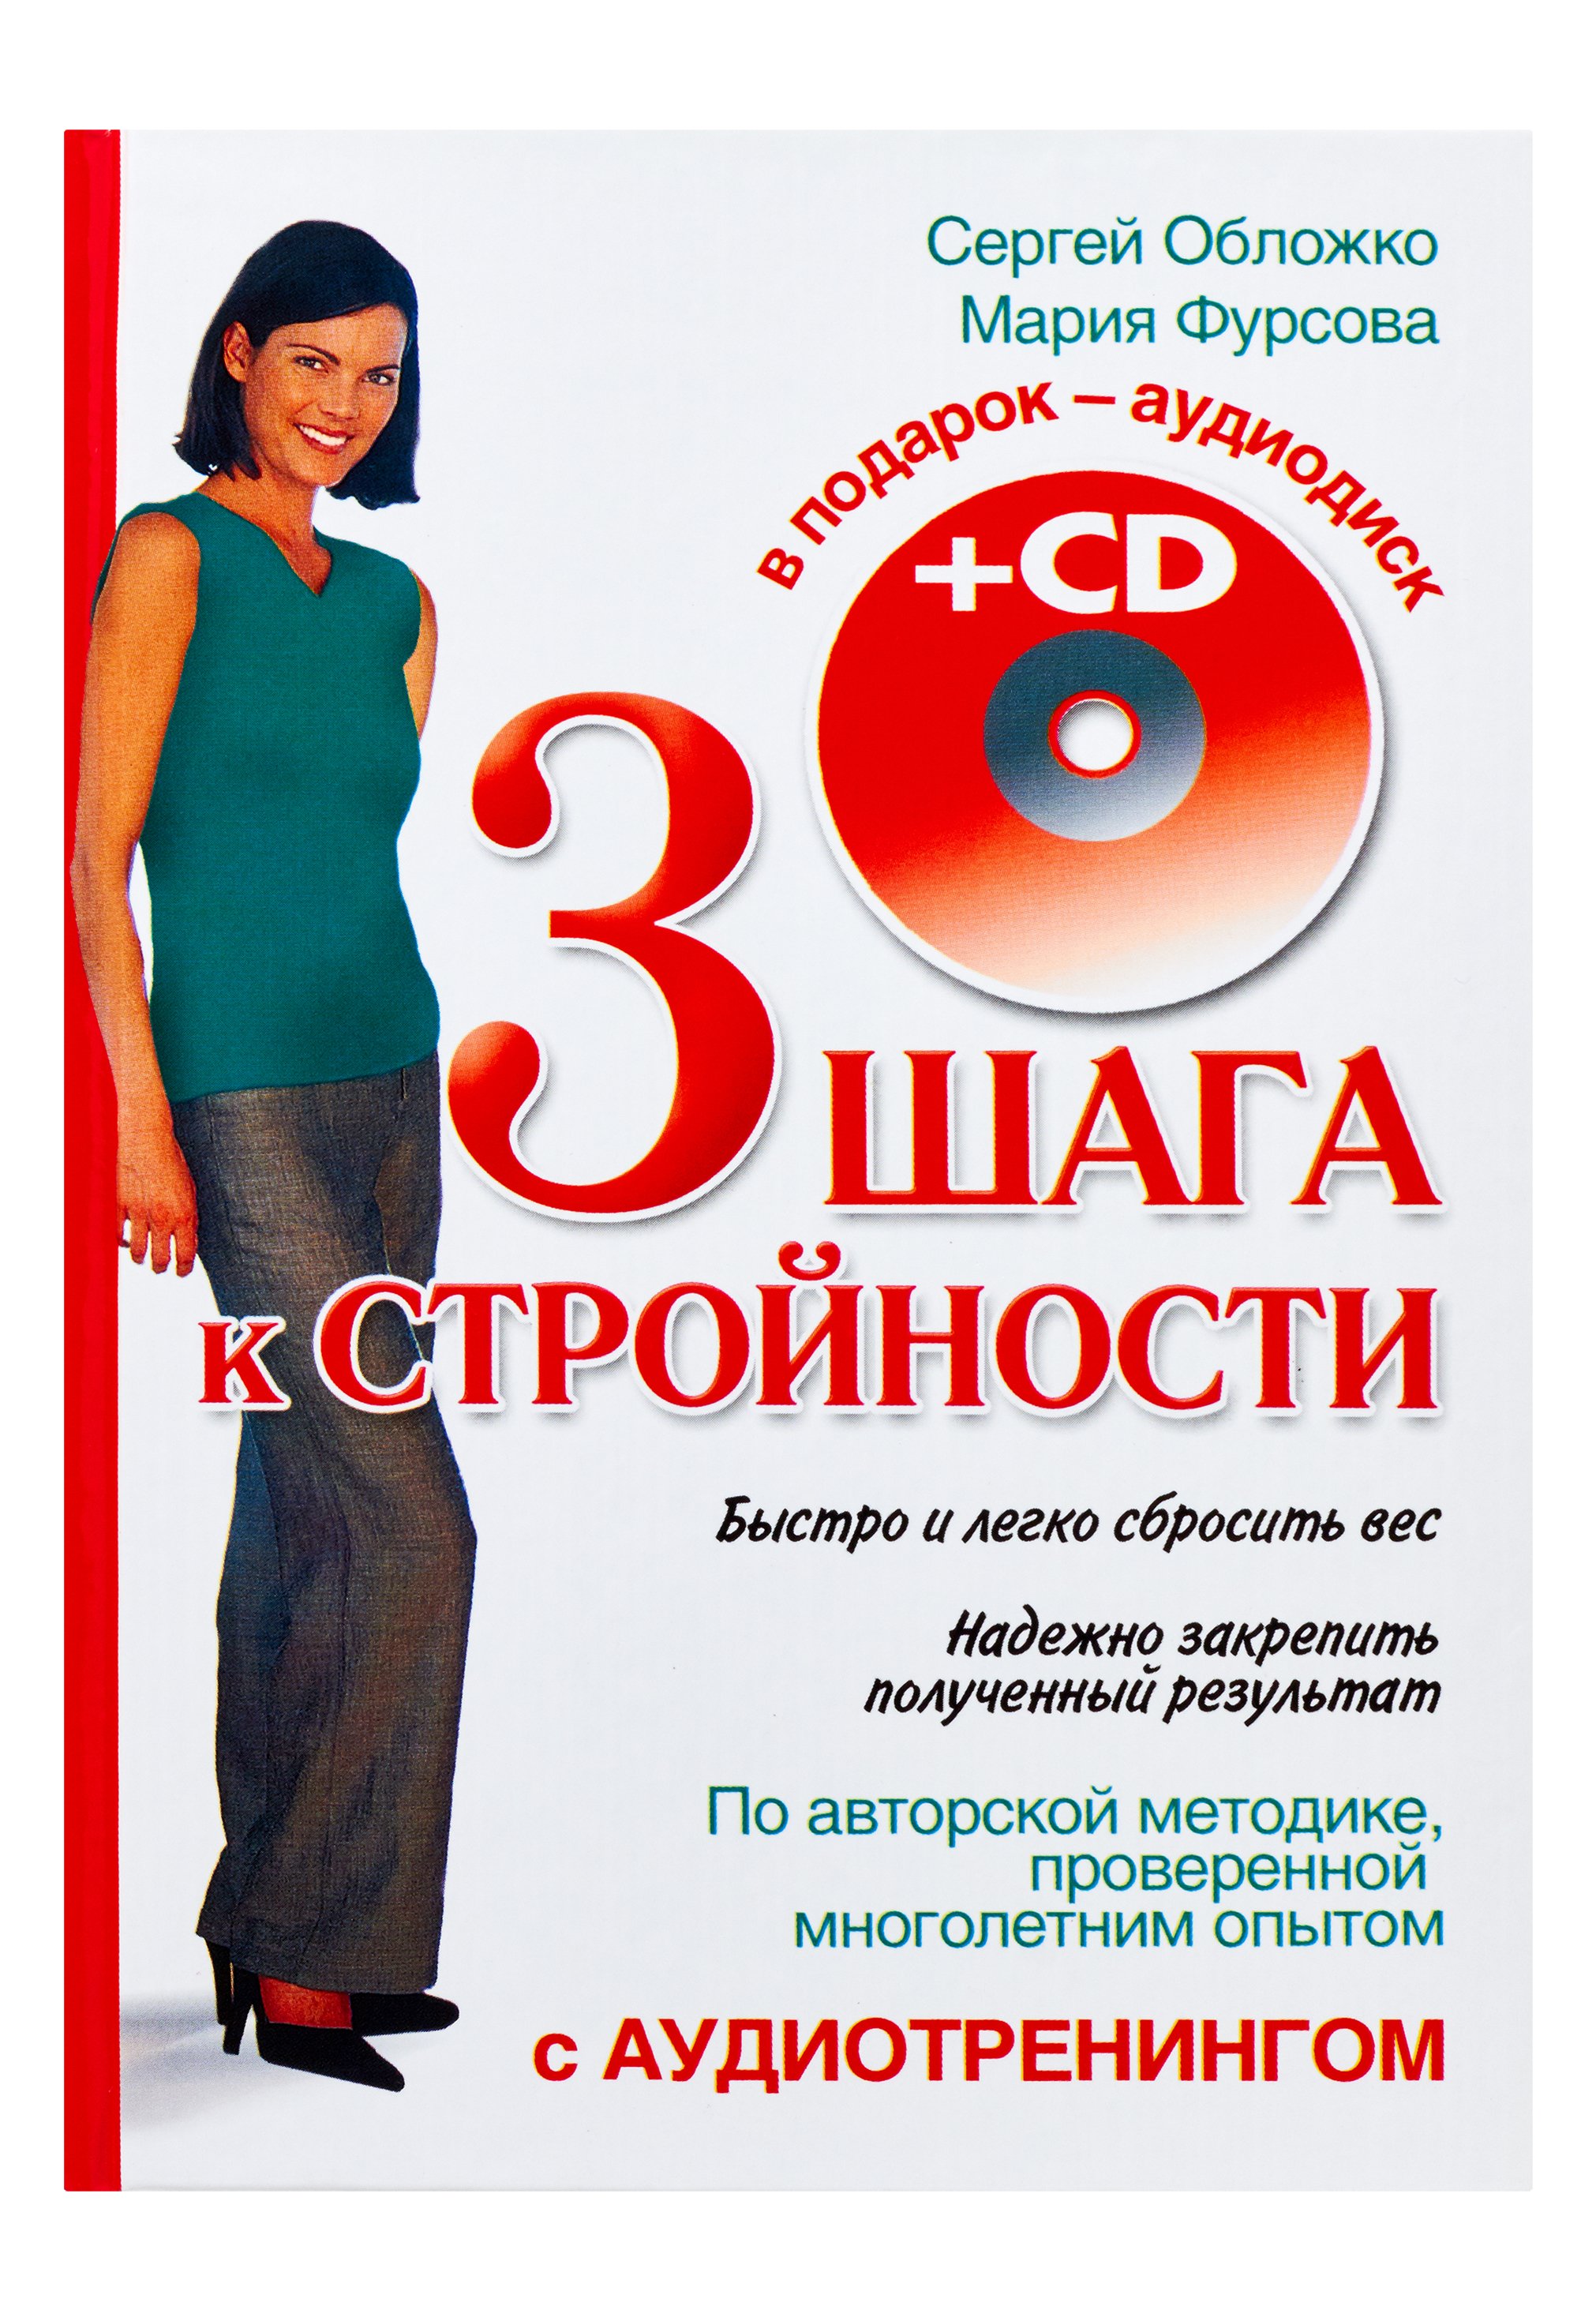 Три шага к стройности с аудиотренингом + CD. Обложко Сергей Михайлович